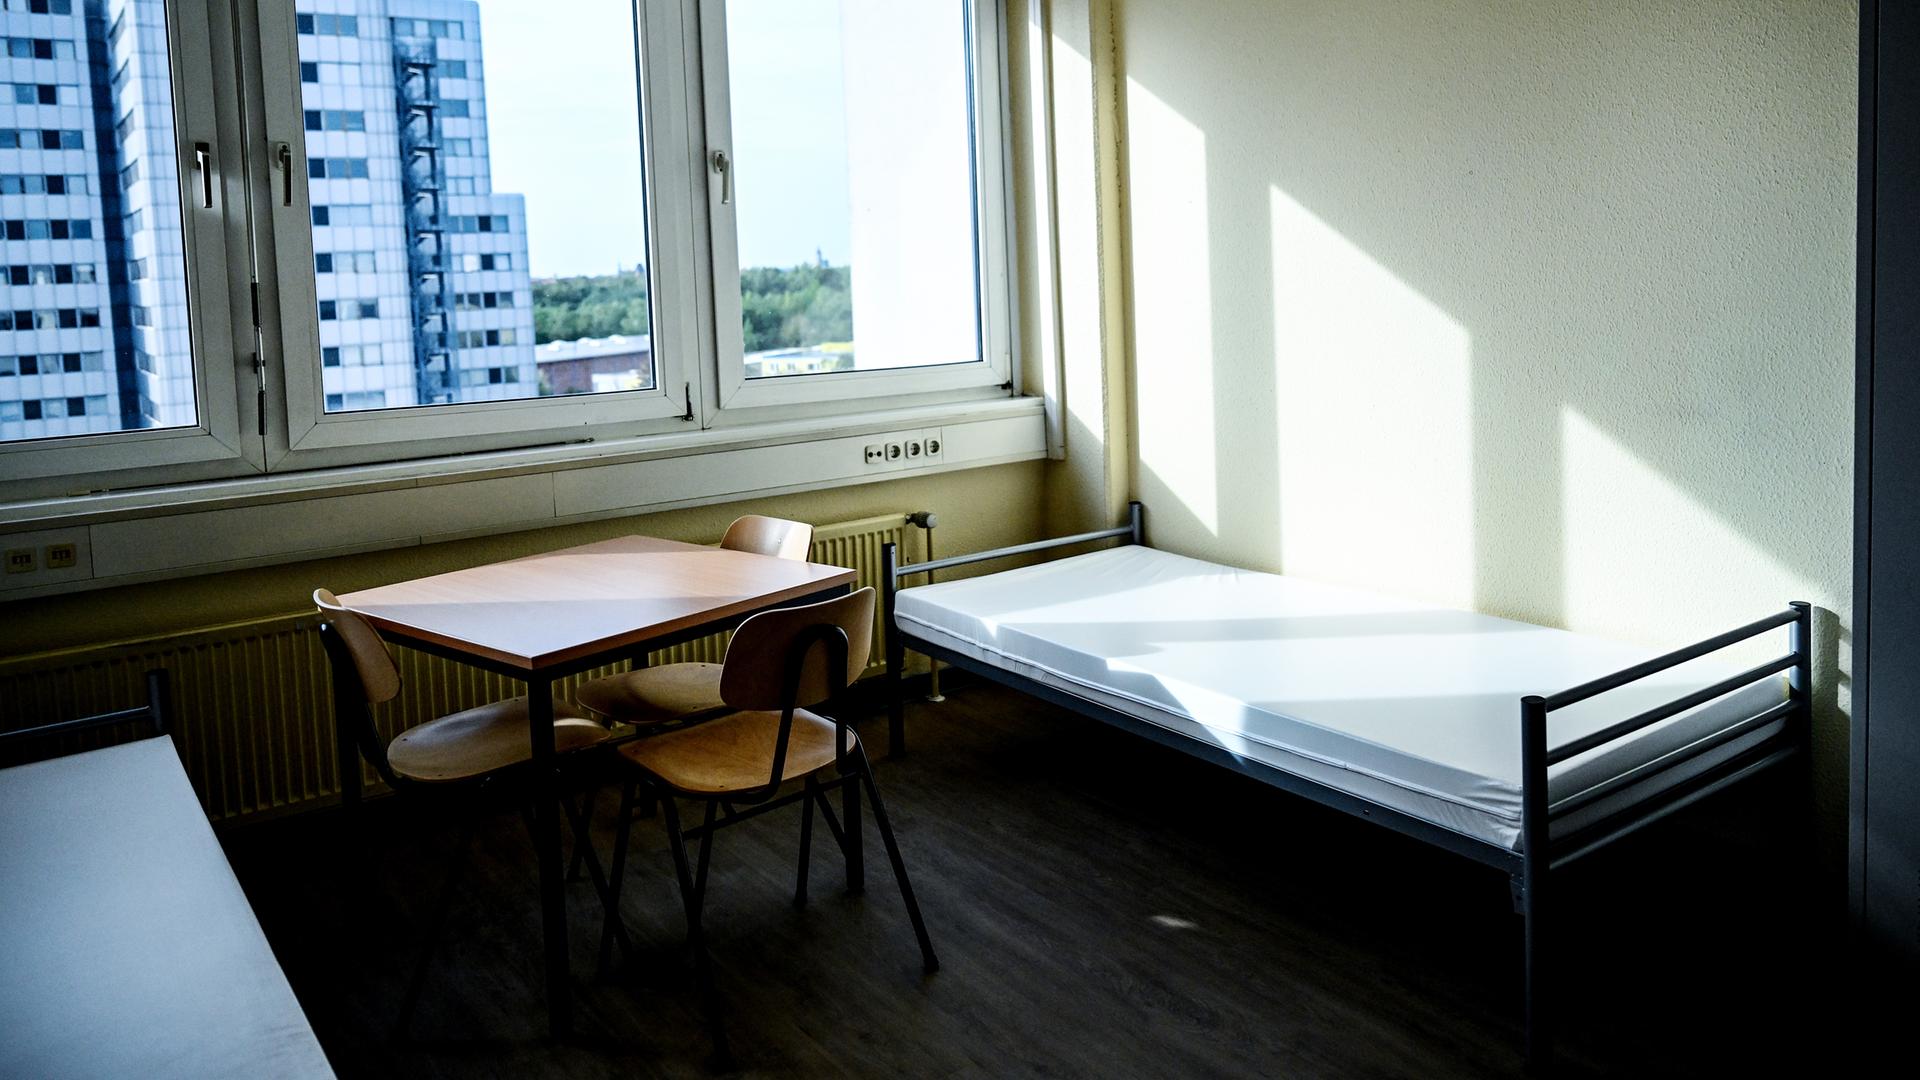 Blick in ein Zimmer in der Flüchtlingsunterkunft in Deutschland. Betten, ein Tisch, drei Stühle und ein Schrank stehen in einem Raum.